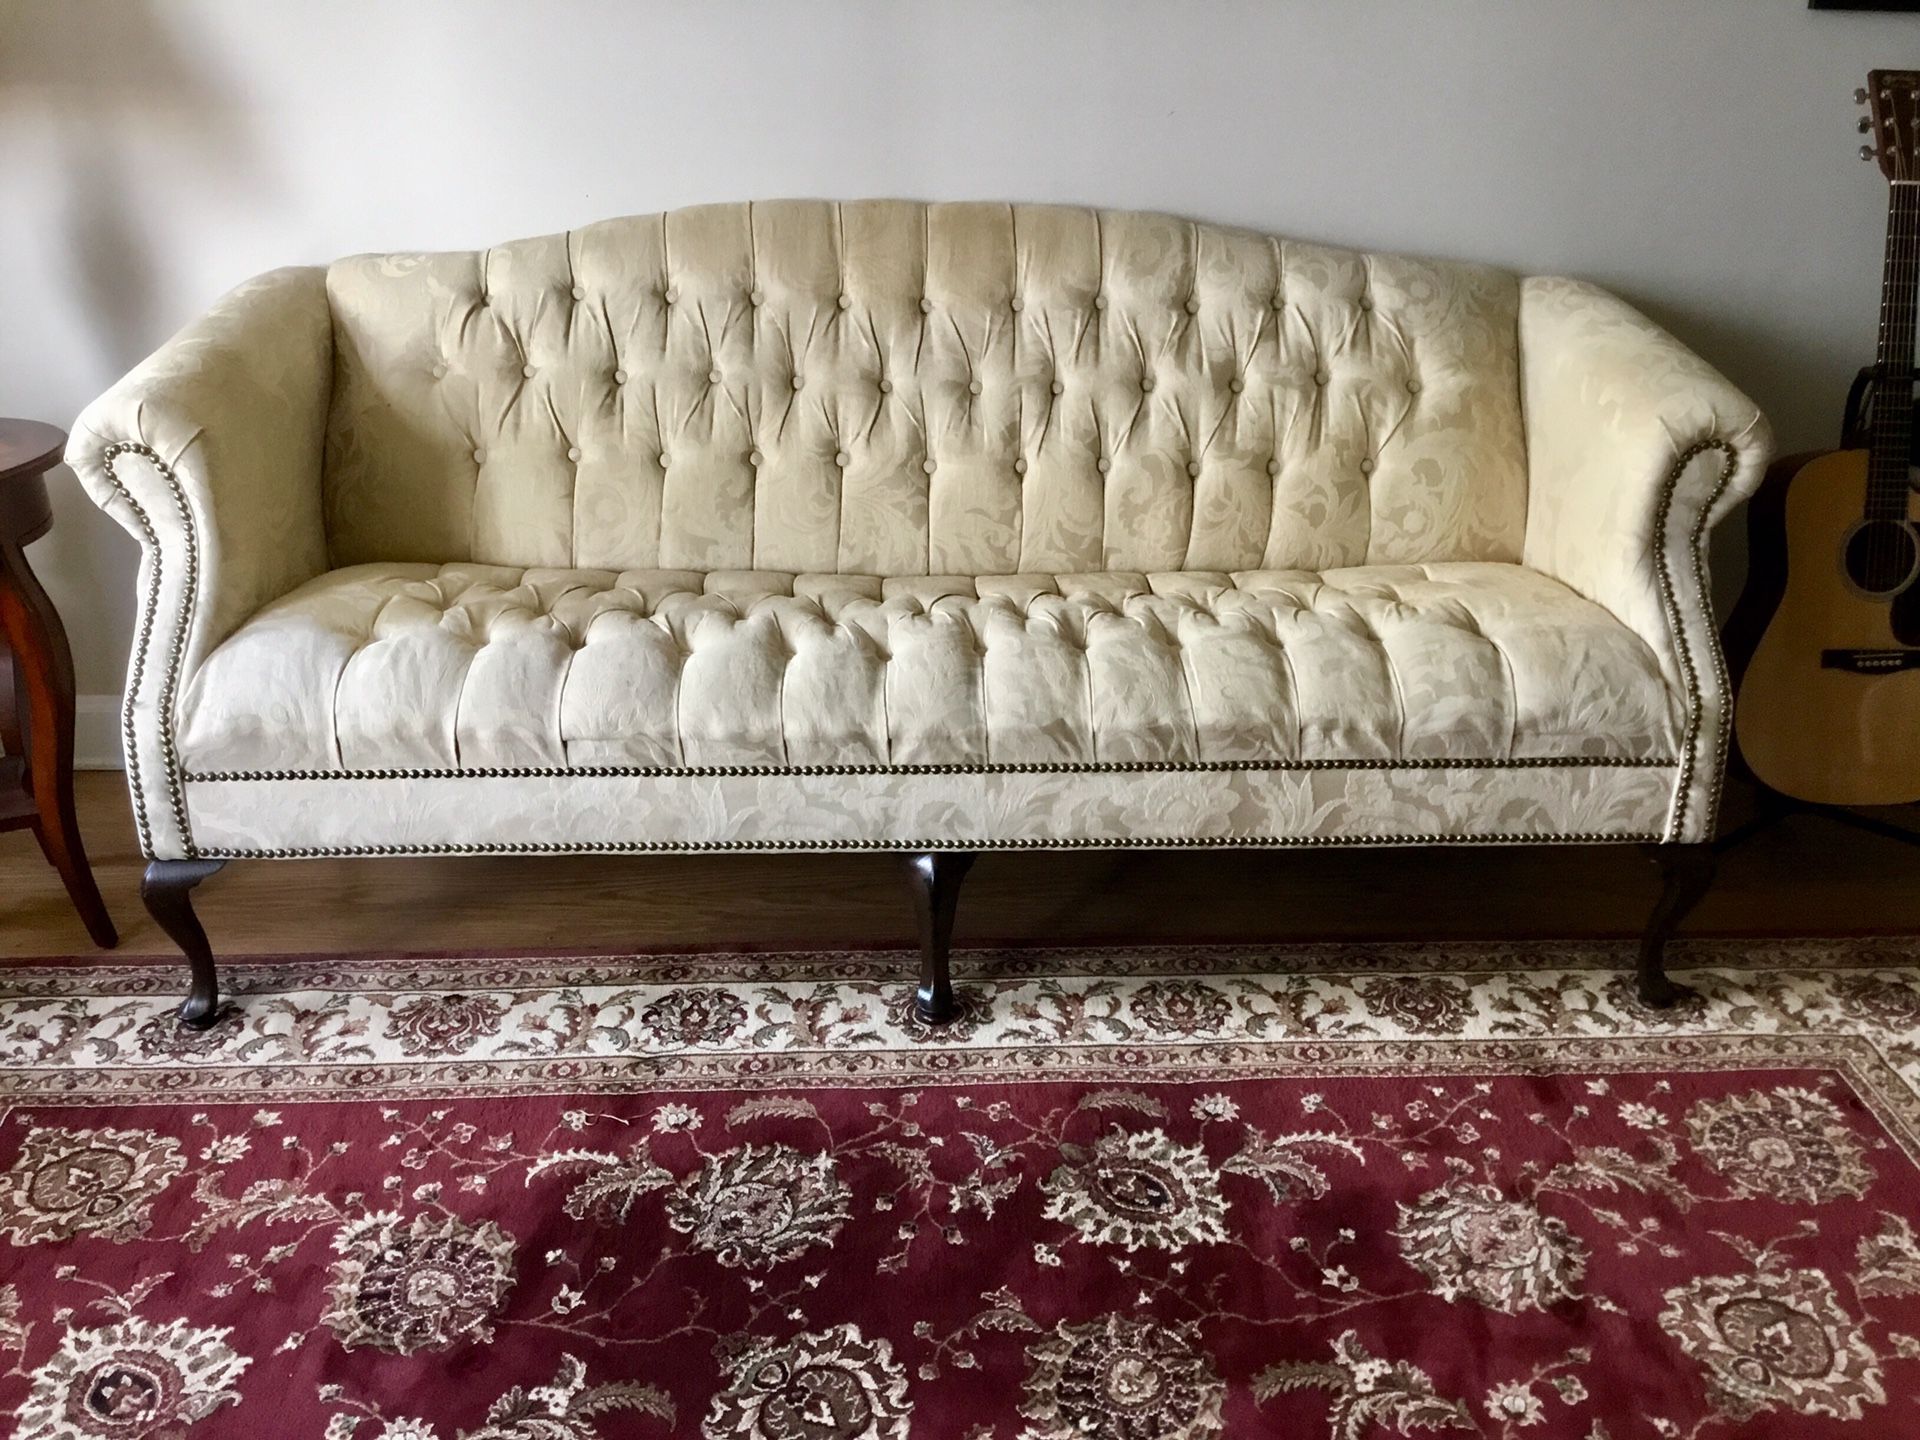 Queen Ann sofa set (sofa, love seat & chair)